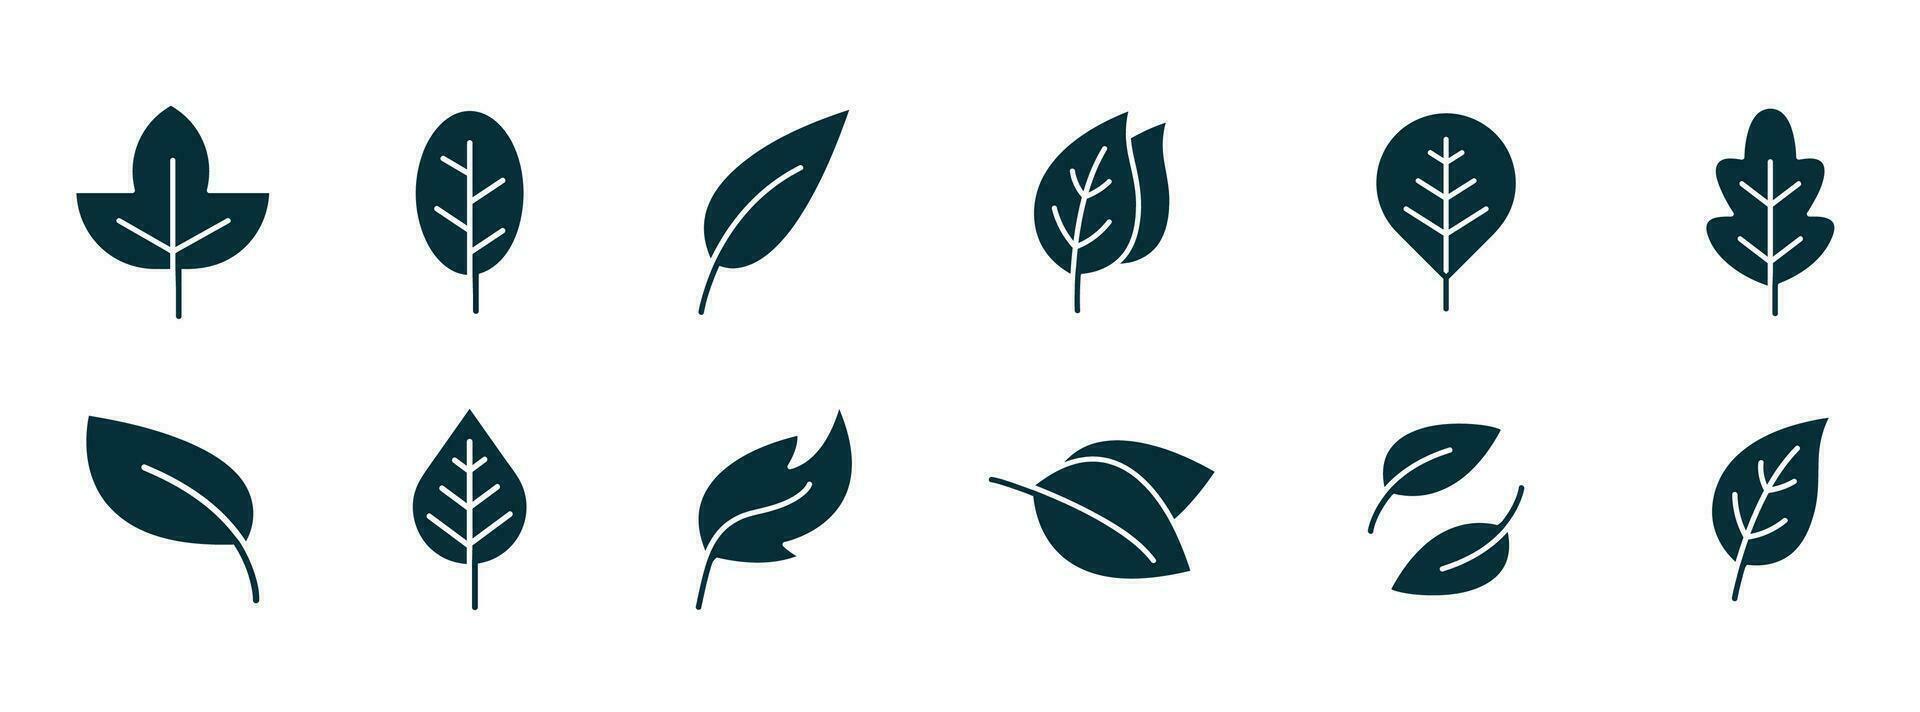 blad ikon. vektor illustrationer av botanik, ört, ekologi, bio, organisk, vegetarian, eko, färsk, och naturlig ikon uppsättning